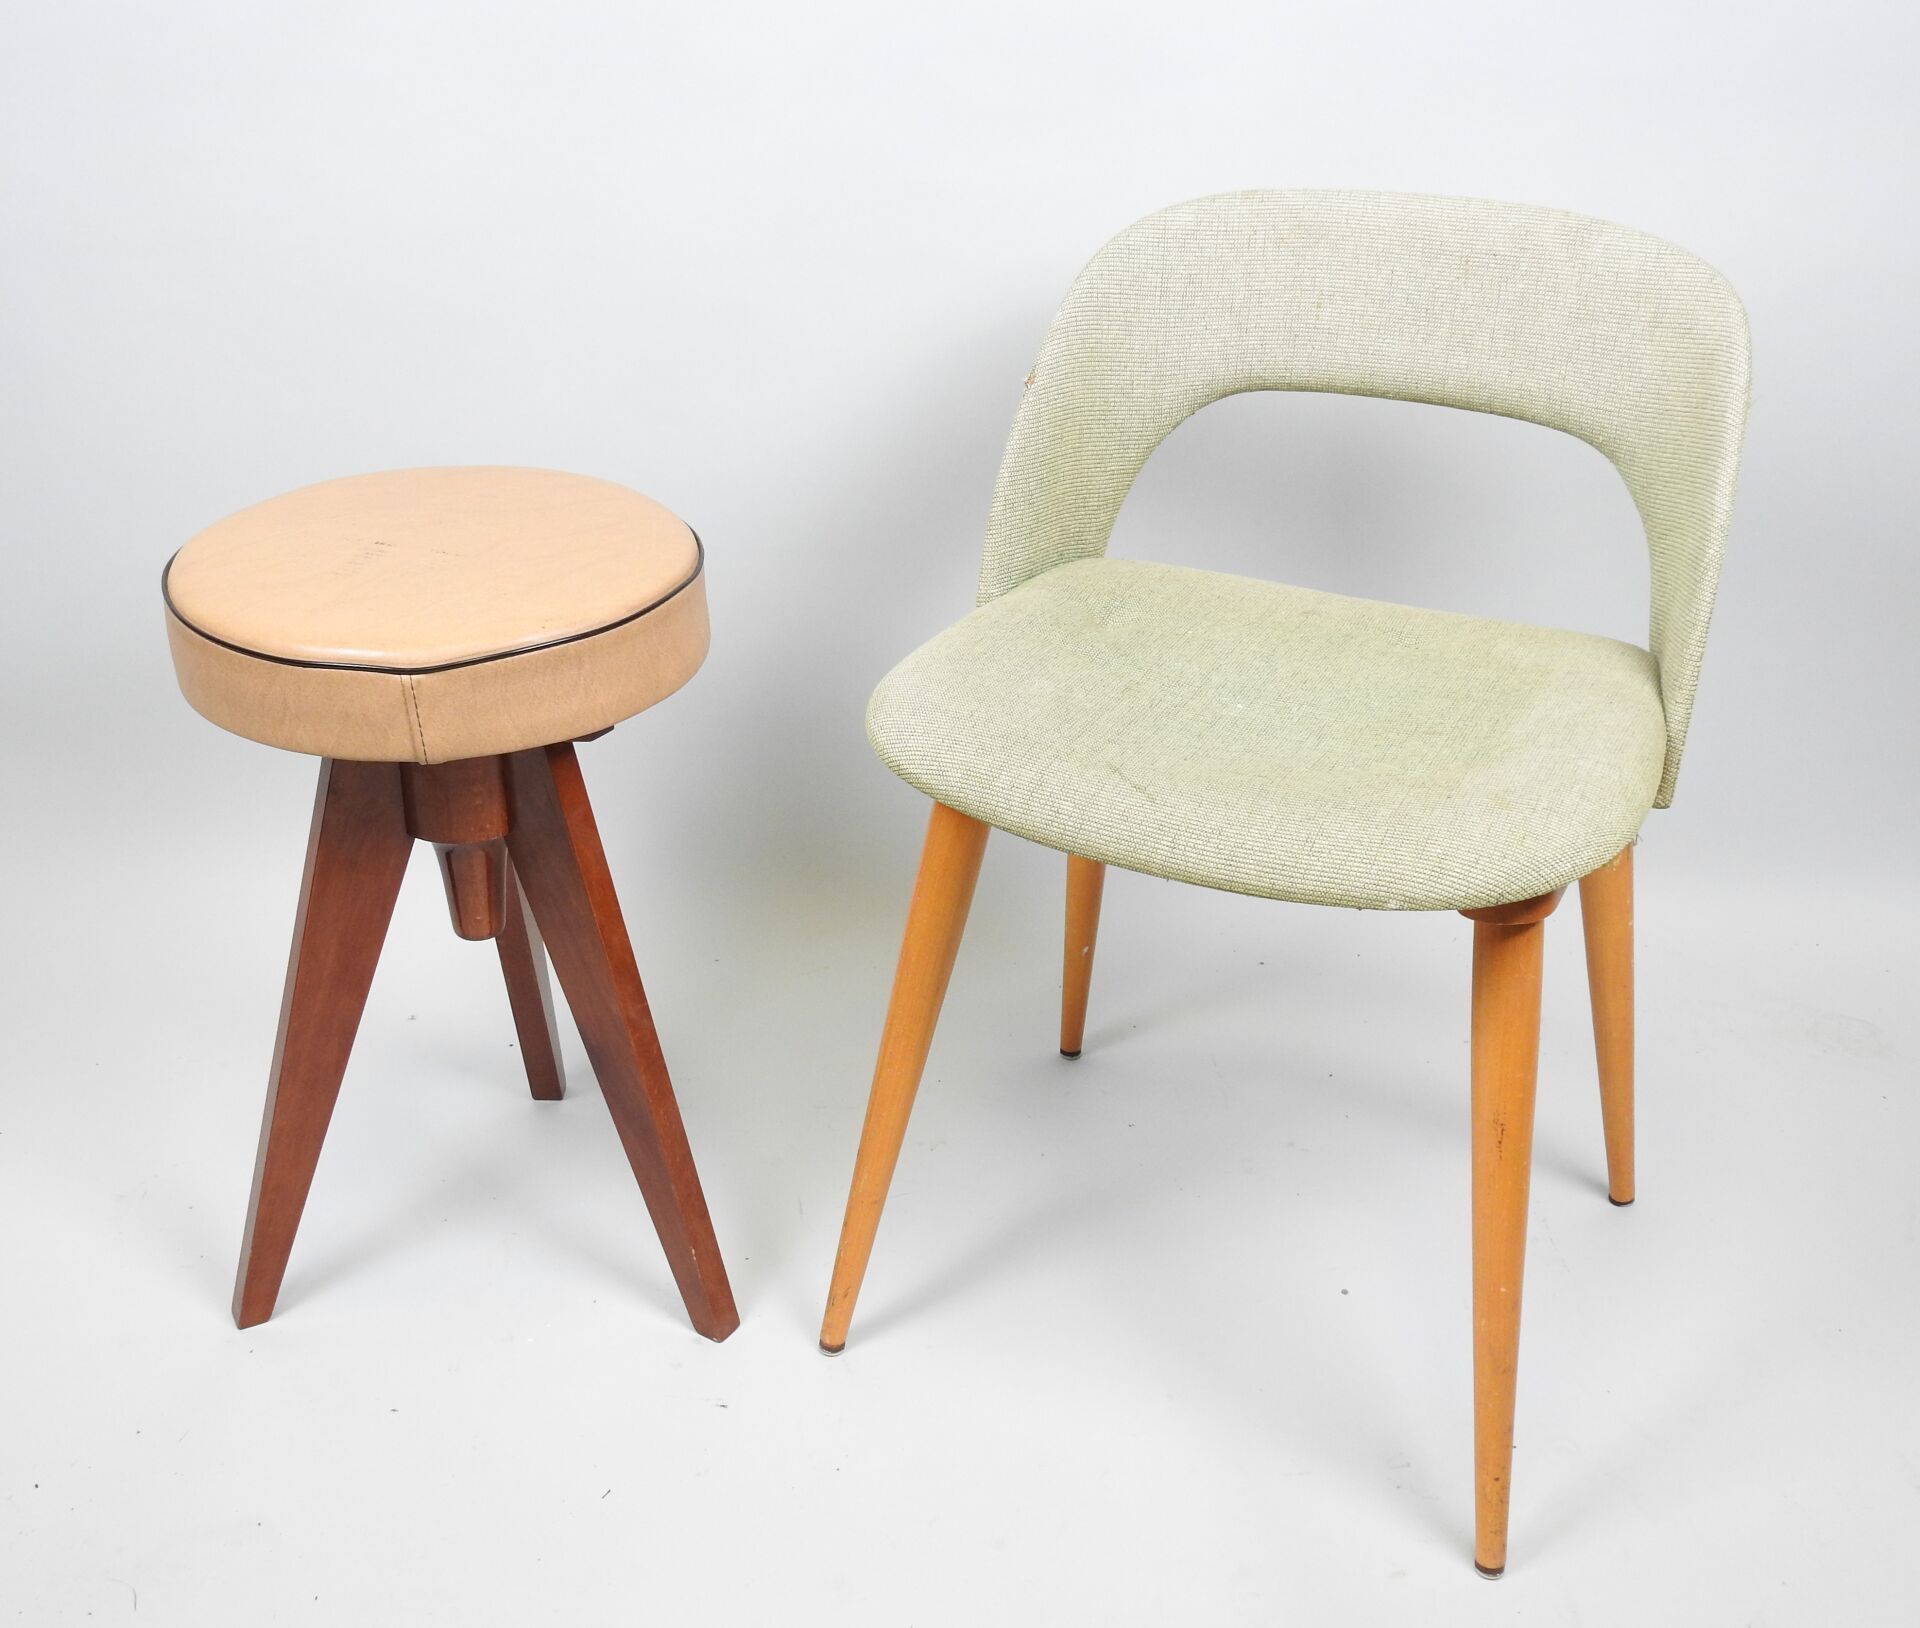 Null Lot bestehend aus:
- Hocker aus Holz und Sitzfläche aus Skai, REINER modell&hellip;